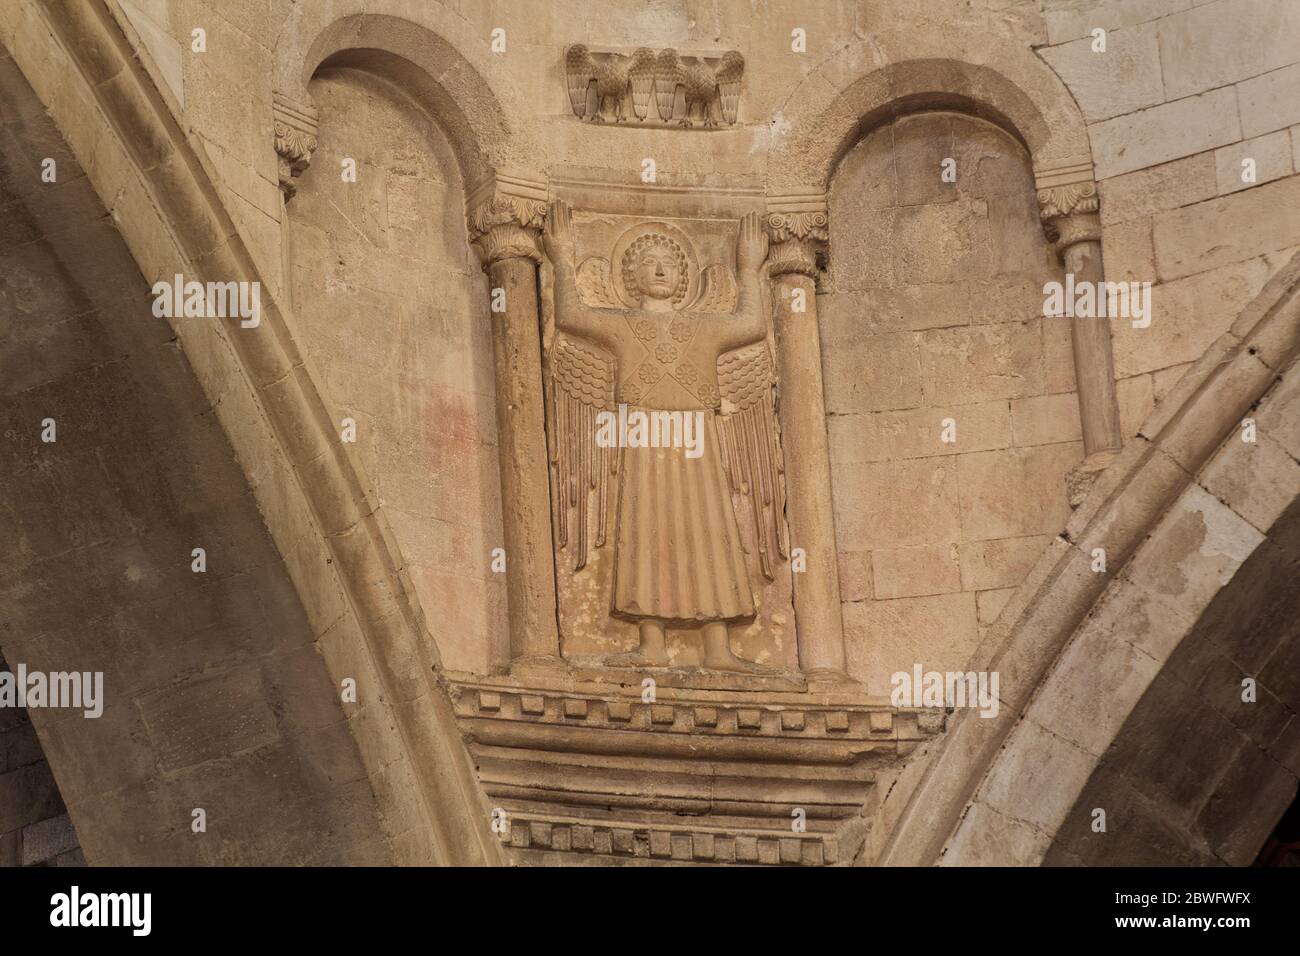 Betende Engel mit seinen Armen in den Himmel erhoben - romanisch-byzantinischen Stil - Kathedrale des Heiligen Cyriacus der Märtyrer - Ancona, Marken, Italien Stockfoto